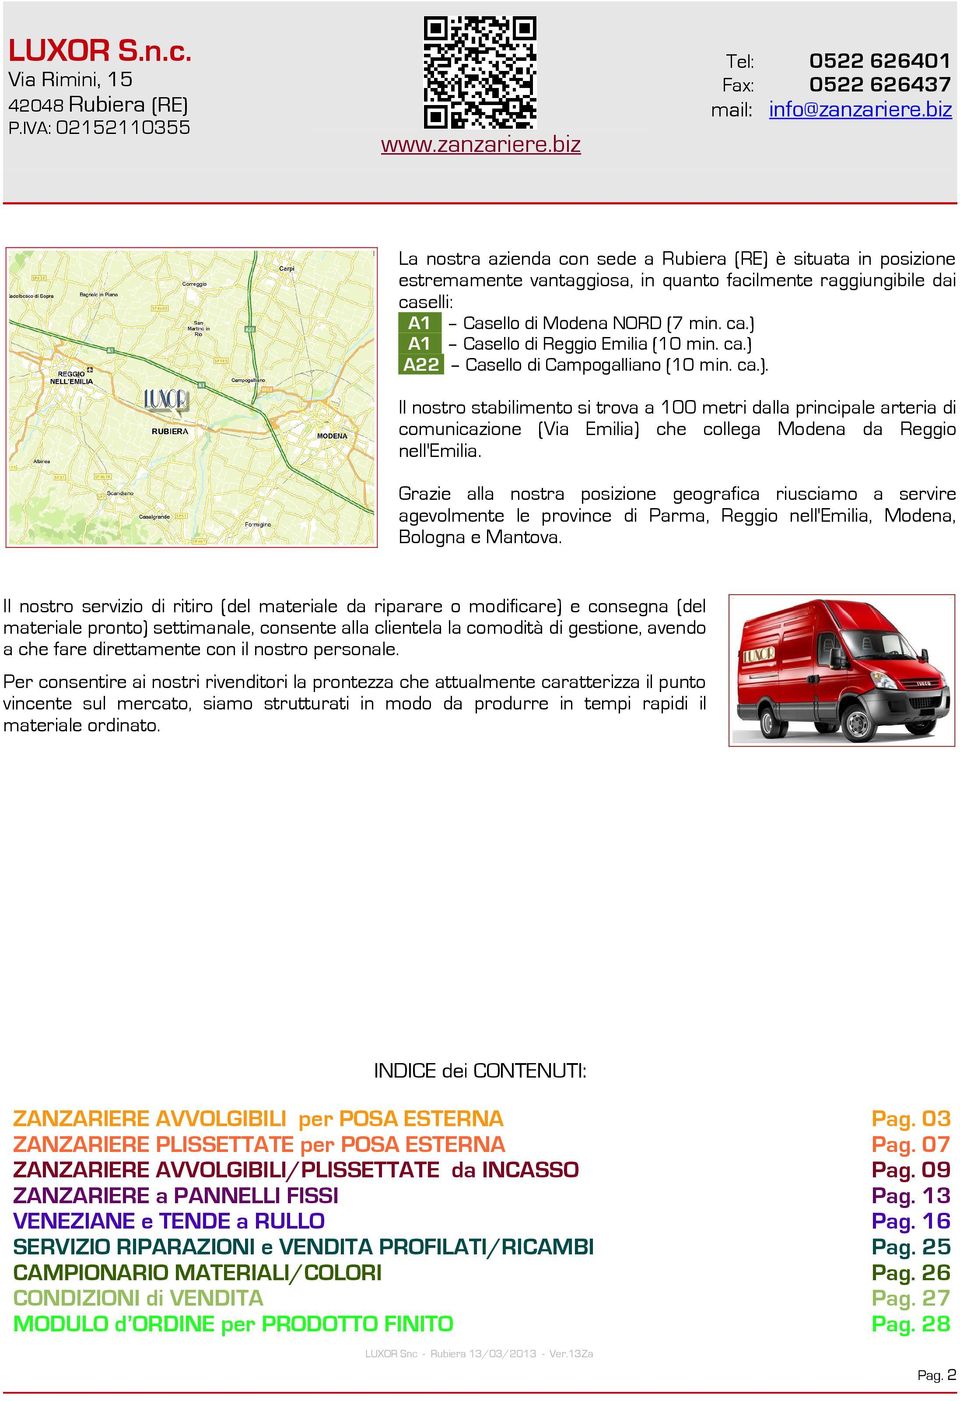 ca.) A22 Casello di Campogalliano (10 min. ca.). Il nostro stabilimento si trova a 100 metri dalla principale arteria di comunicazione (Via Emilia) che collega Modena da Reggio nell'emilia.